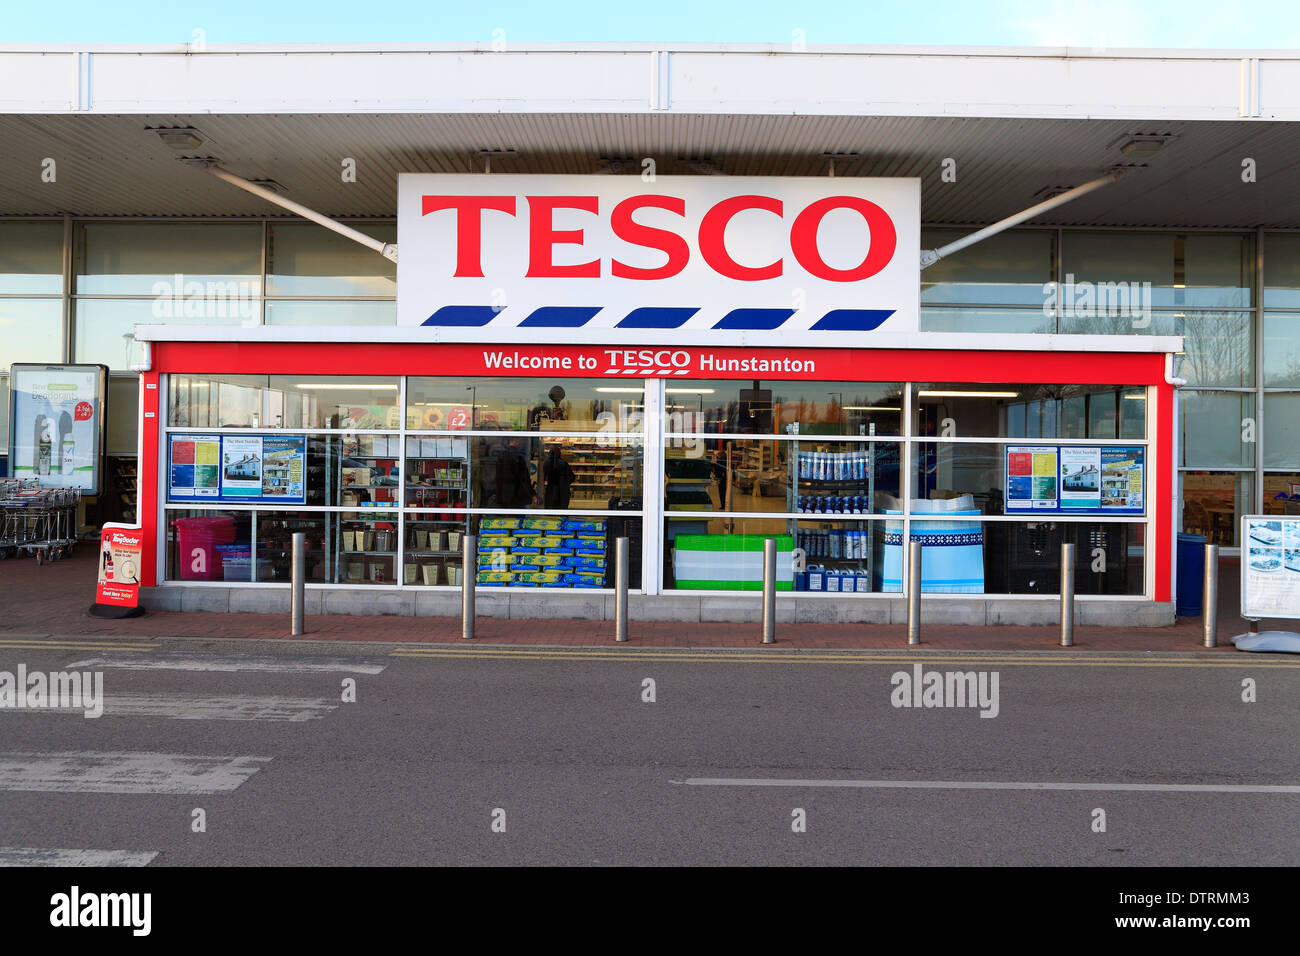 Tesco-Supermarkt, Hunstanton, Norfolk England UK britisches Englisch Supermärkte Logo logos Stockfoto